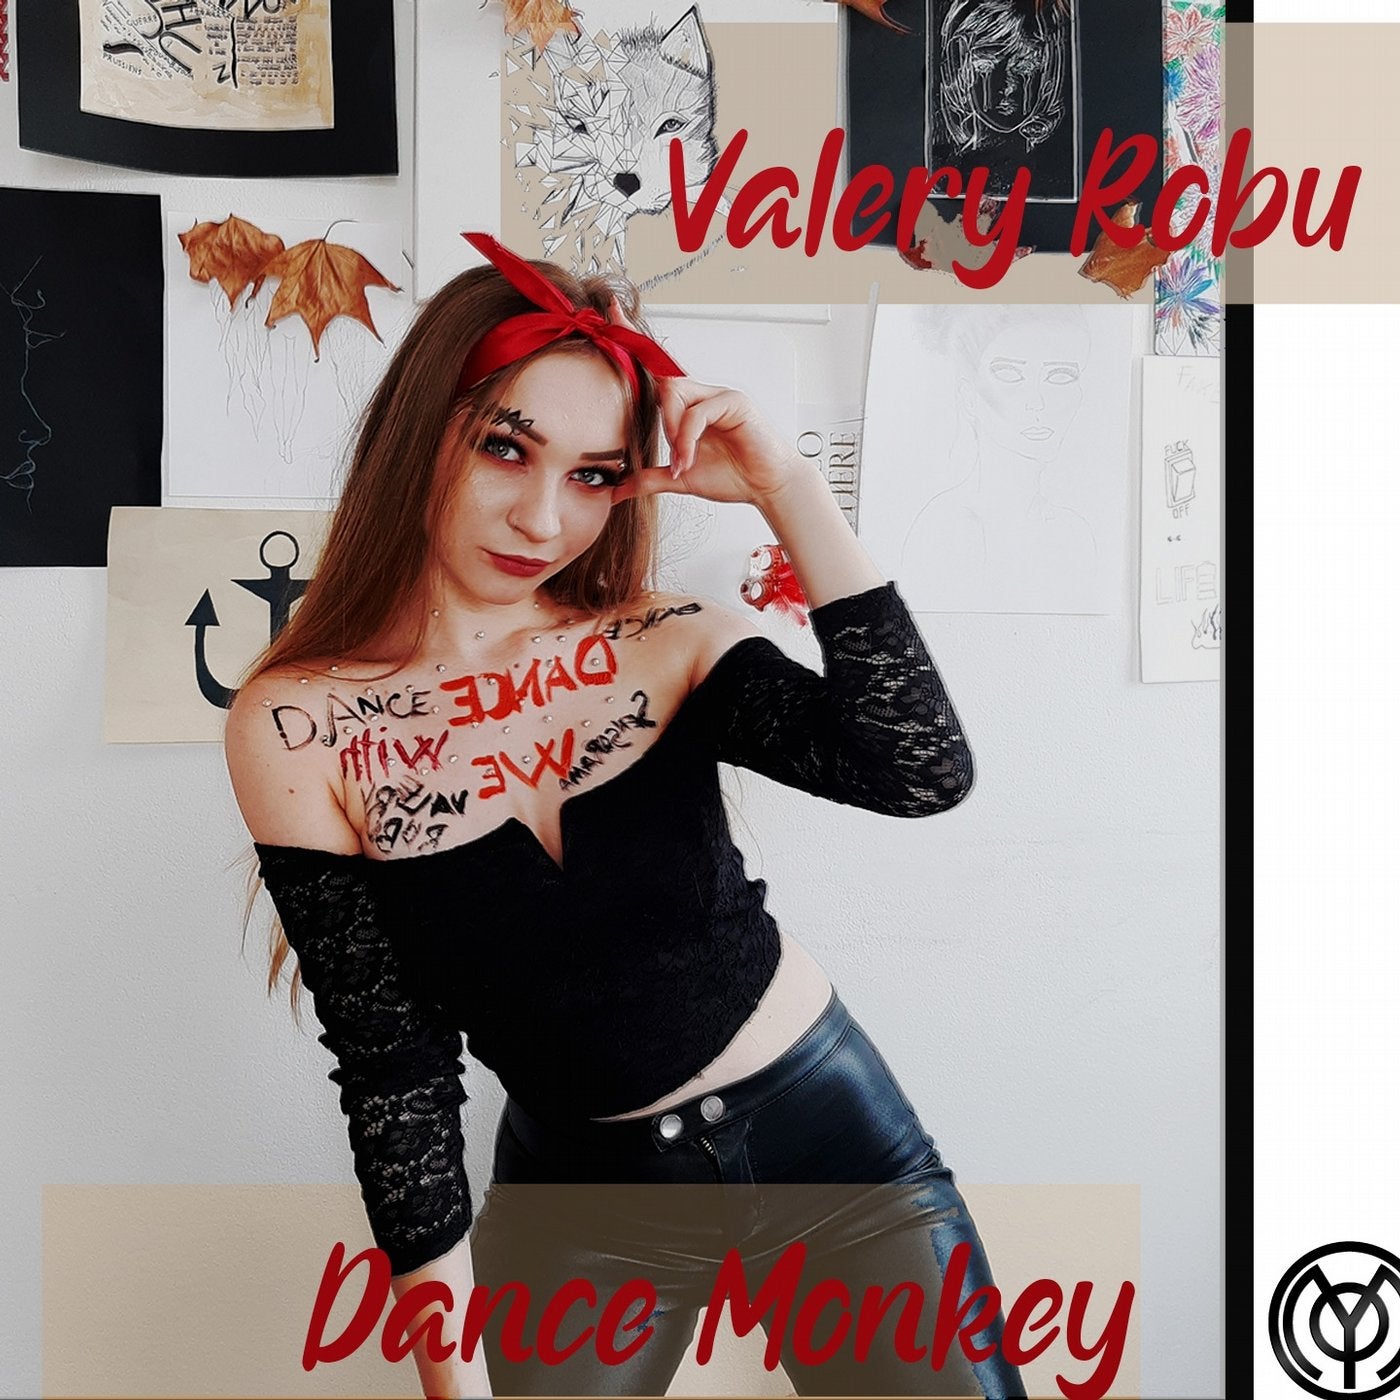 Dance Monkey (GC Remix)